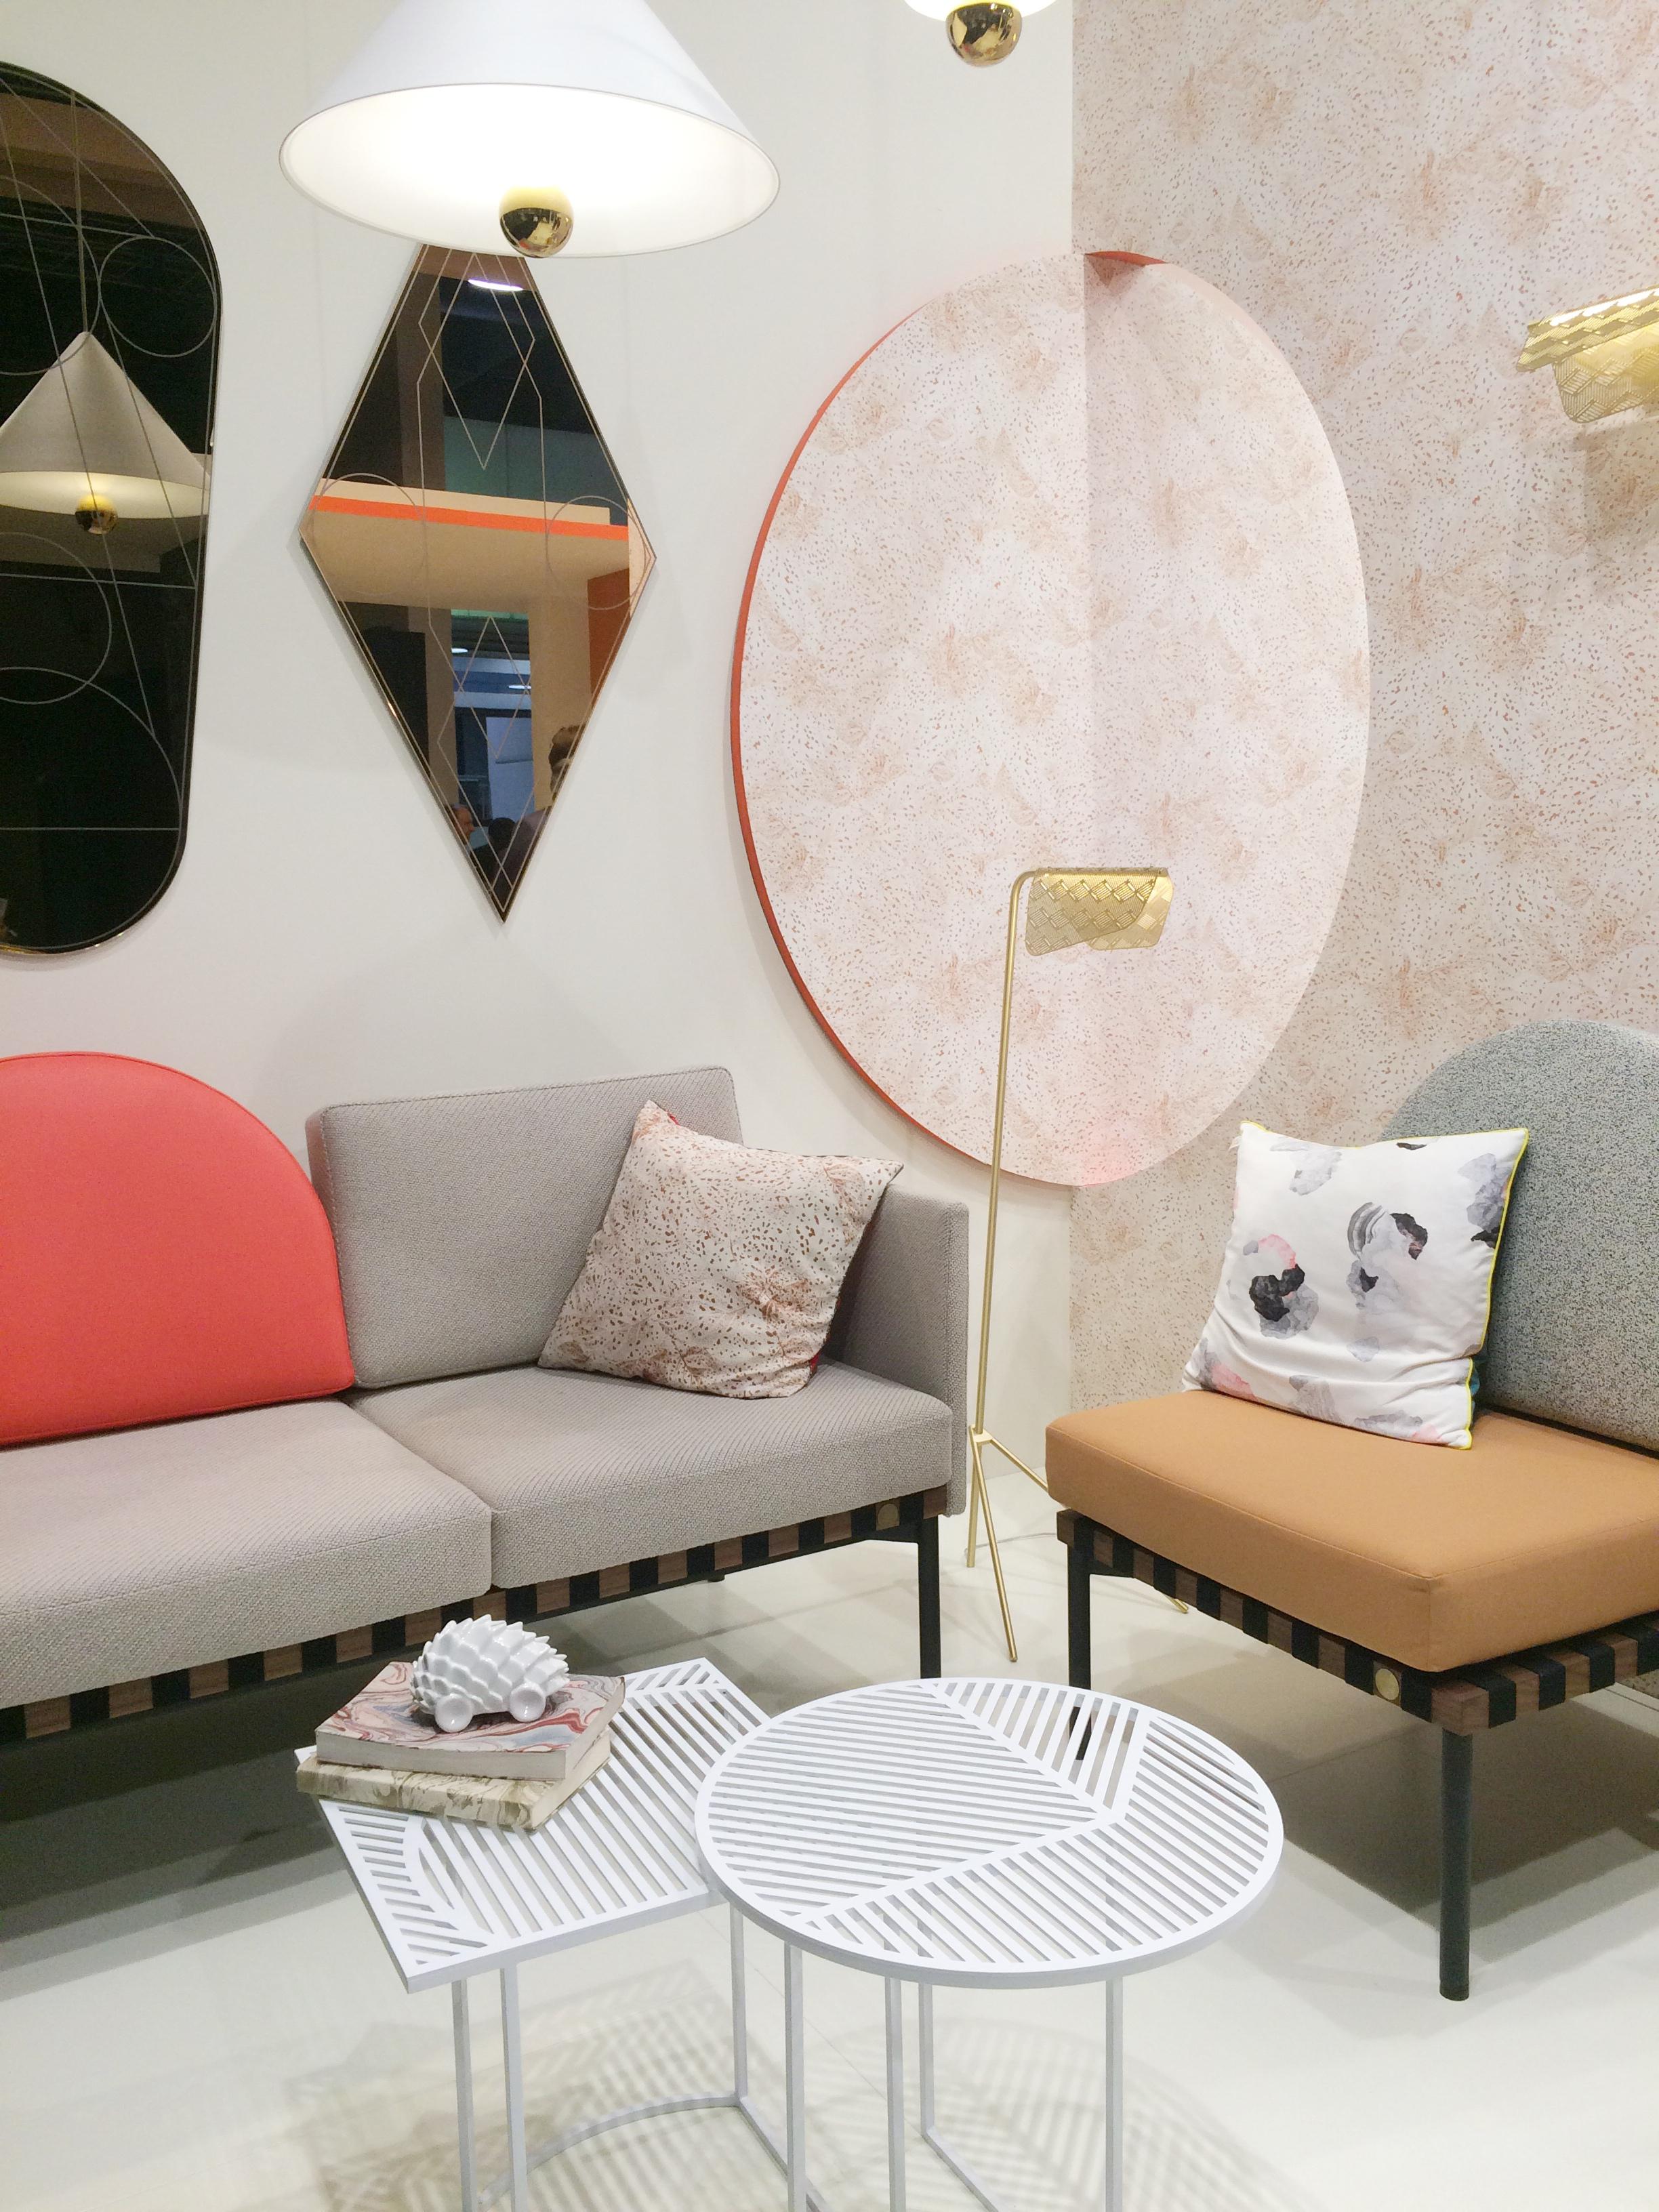 Leichtfüßige Möbel passen auch in kleine Räune #petitefriture #beistelltisch #sofa #frenchdesign